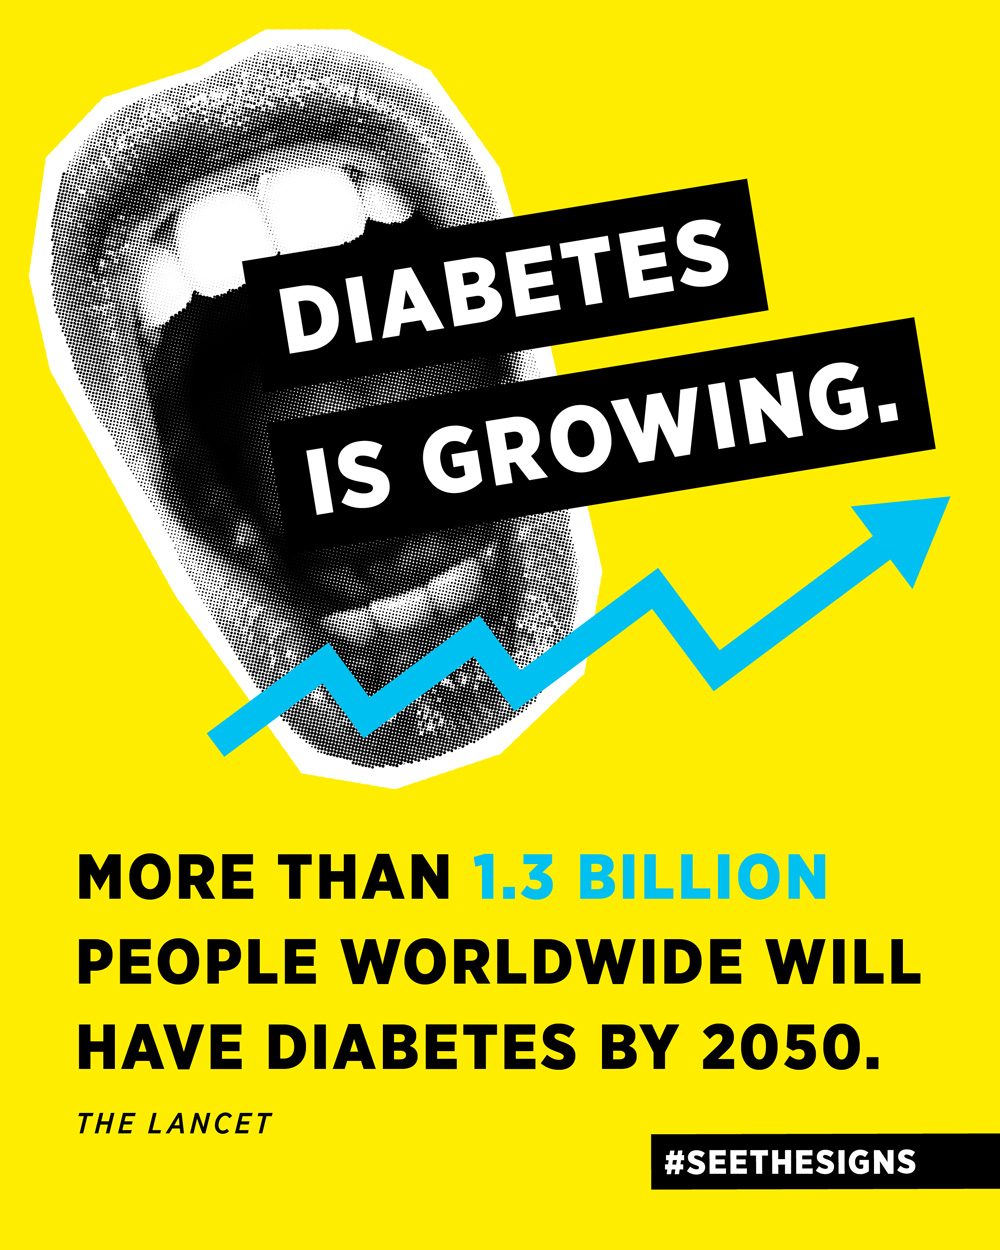 Diabetes is growing